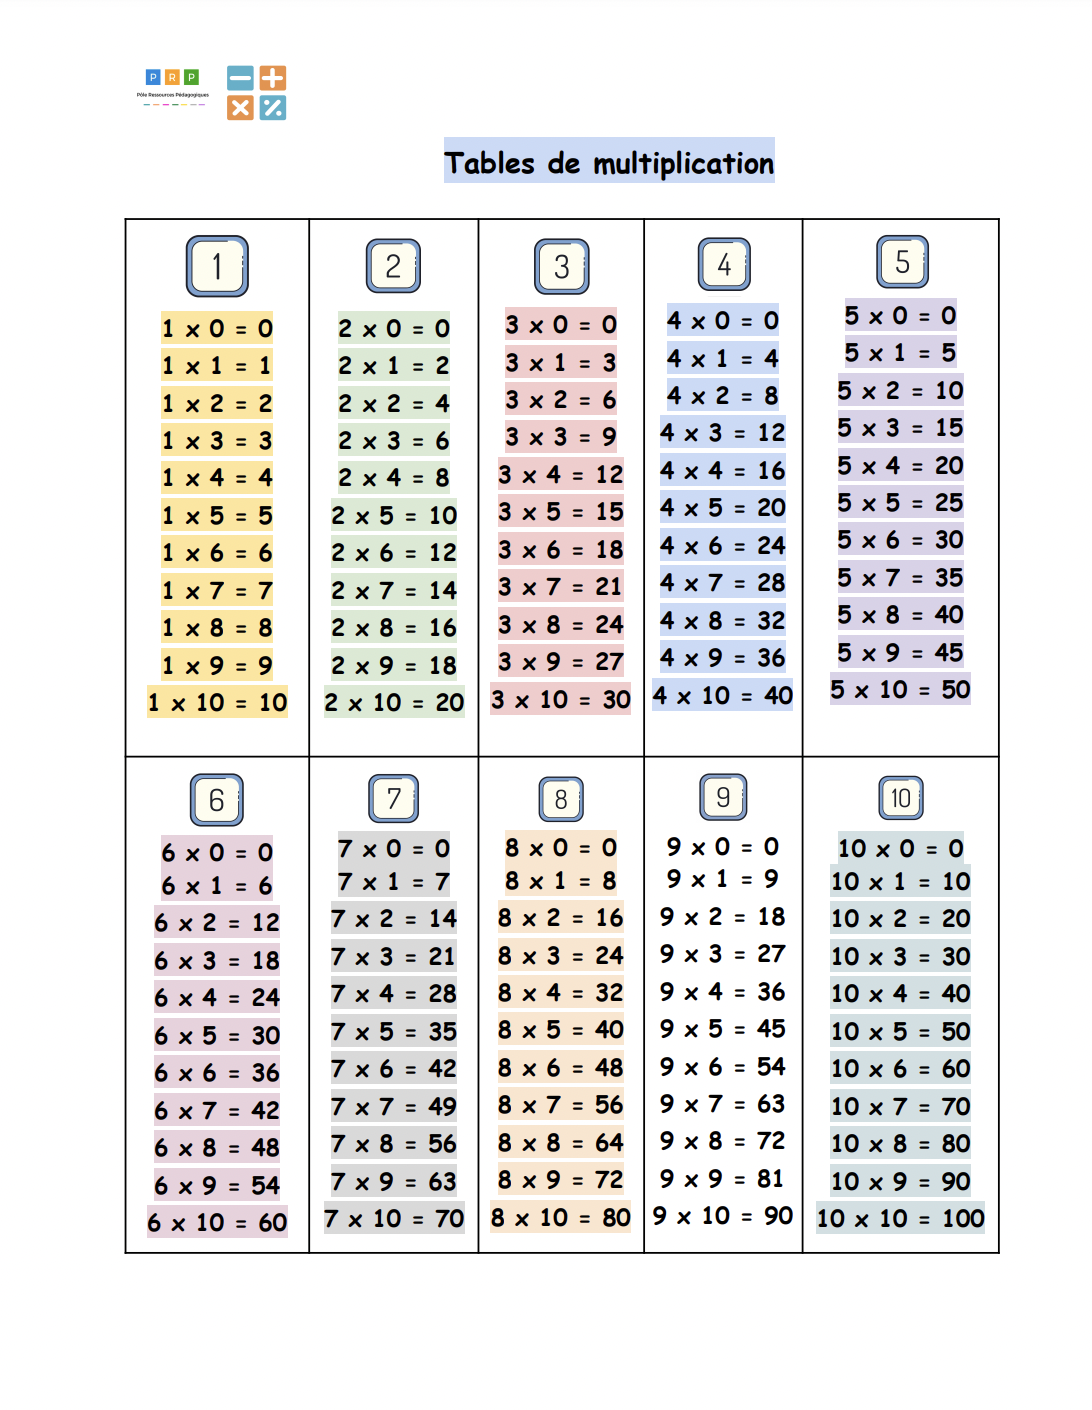 Tables de multiplication à imprimer, tables de multiplication - okgo.net